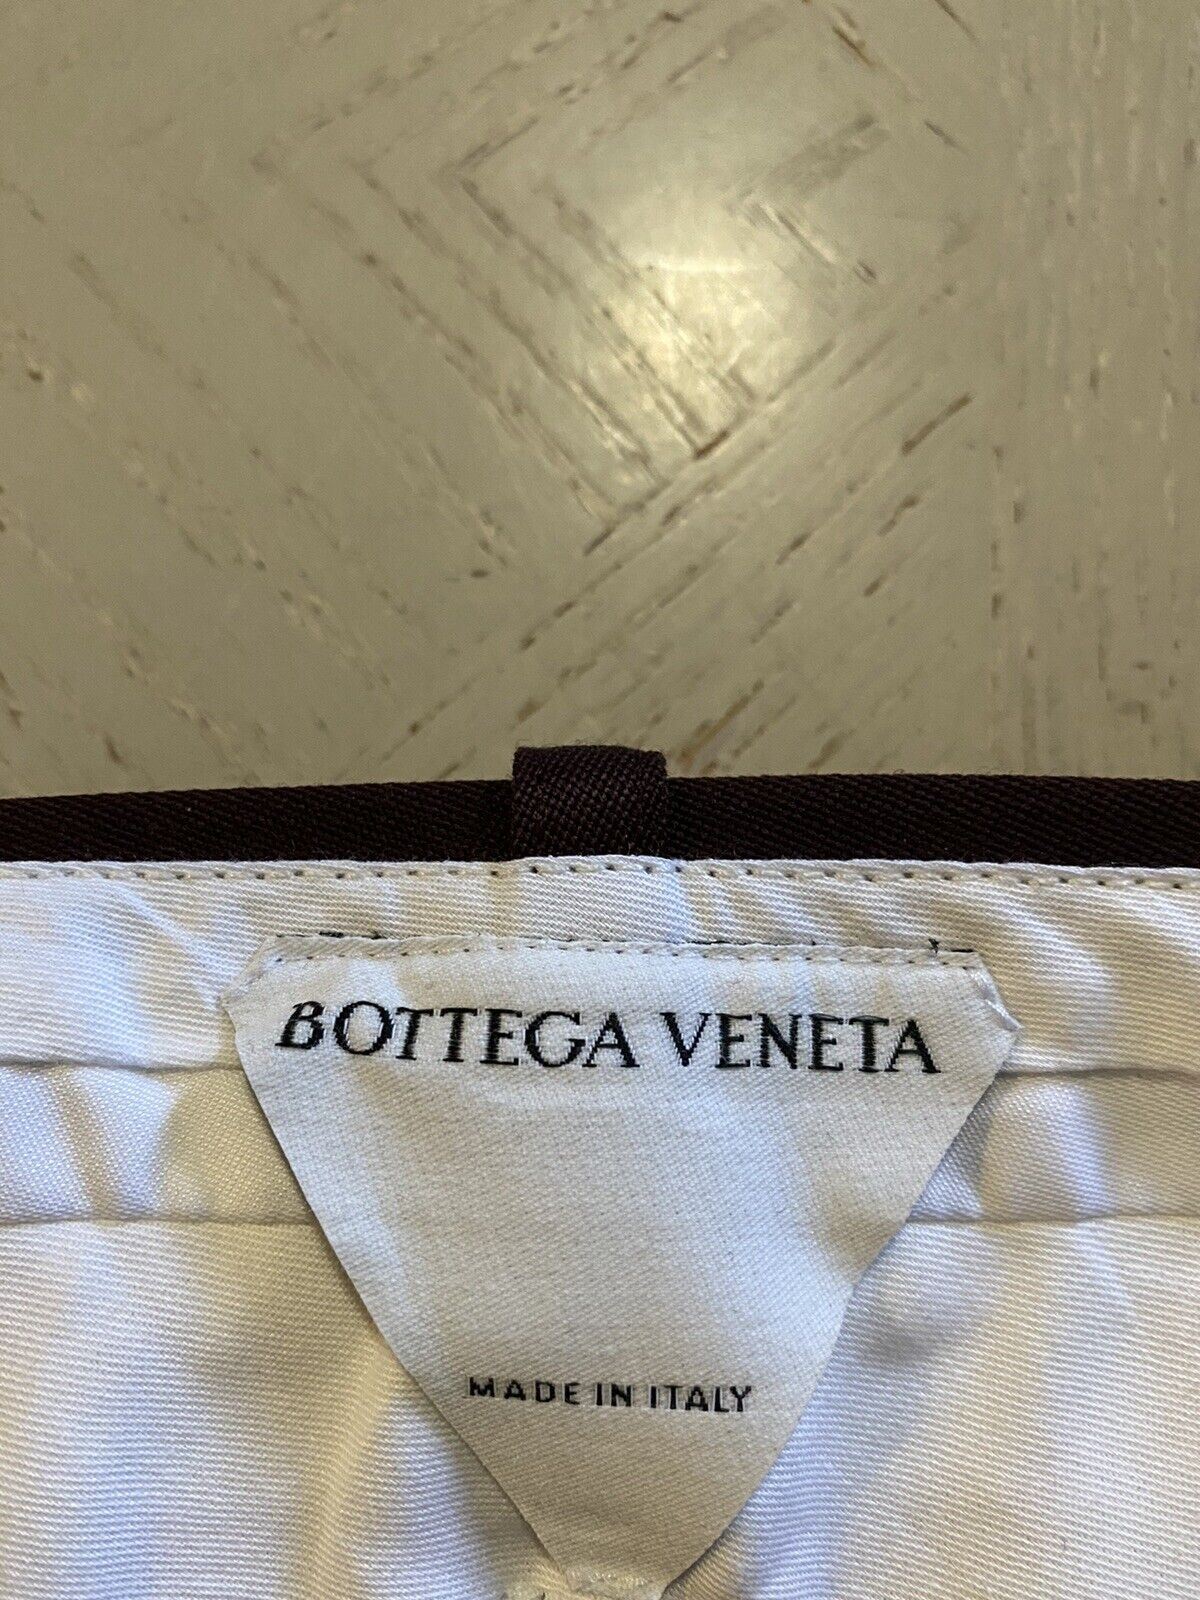 СЗТ $1100 Мужские шерстяные классические брюки Bottega Veneta бордовые 38 США/54 ЕС